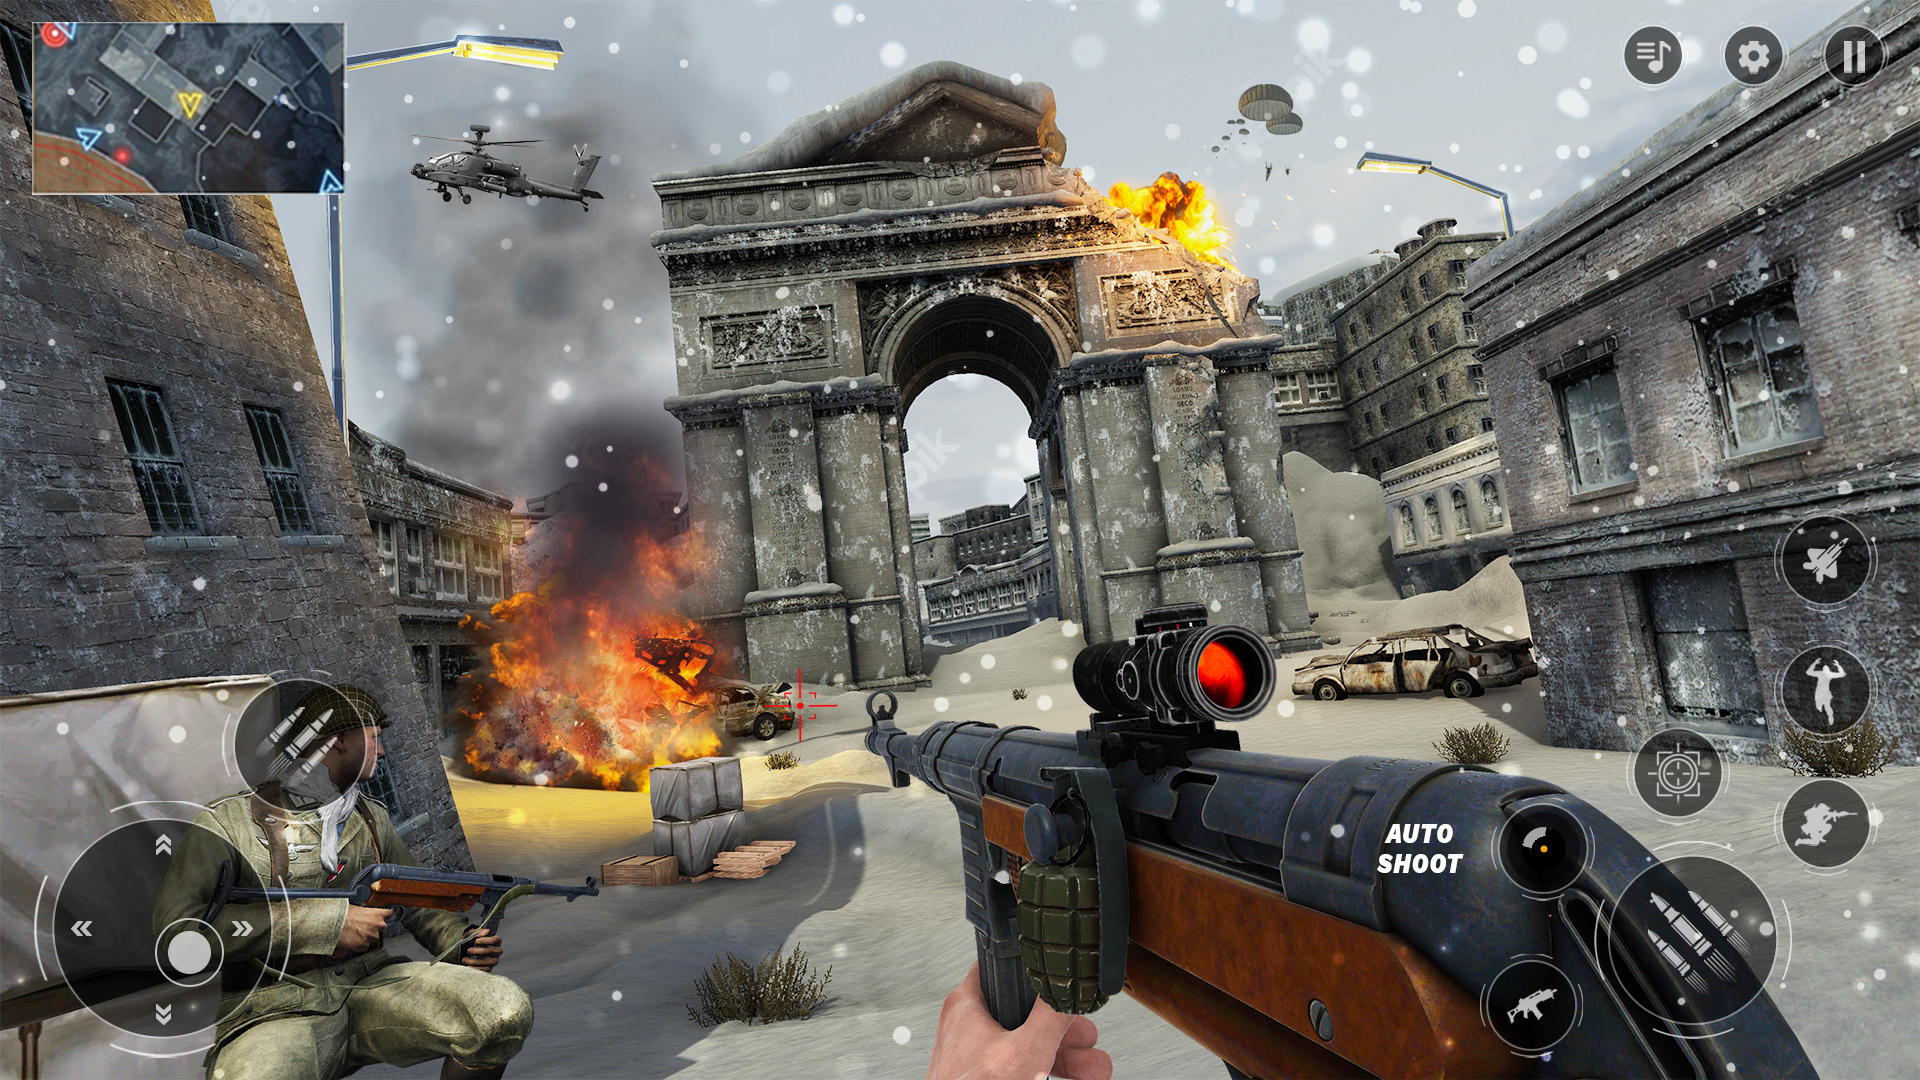 Jogo de Tiro 3D:Jogos de Armas APK (Android Game) - Baixar Grátis